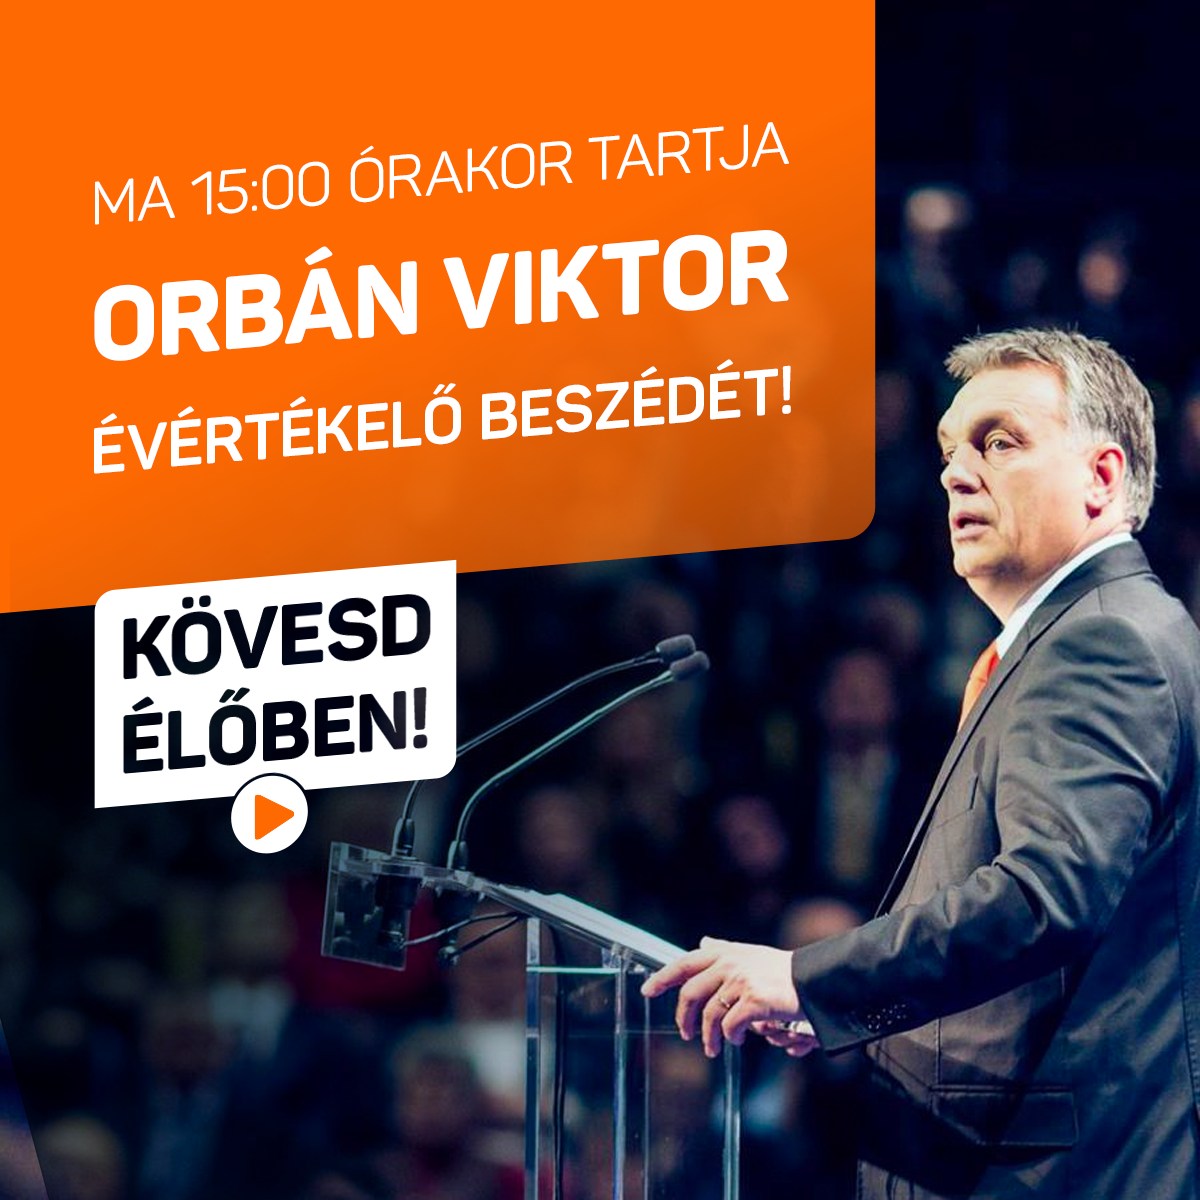 Orbán Viktor  ﻿ma 15:00 órakor tartja évértékelő beszédét! ﻿Kövesd élőben a Fidesz Facebook-oldalán!